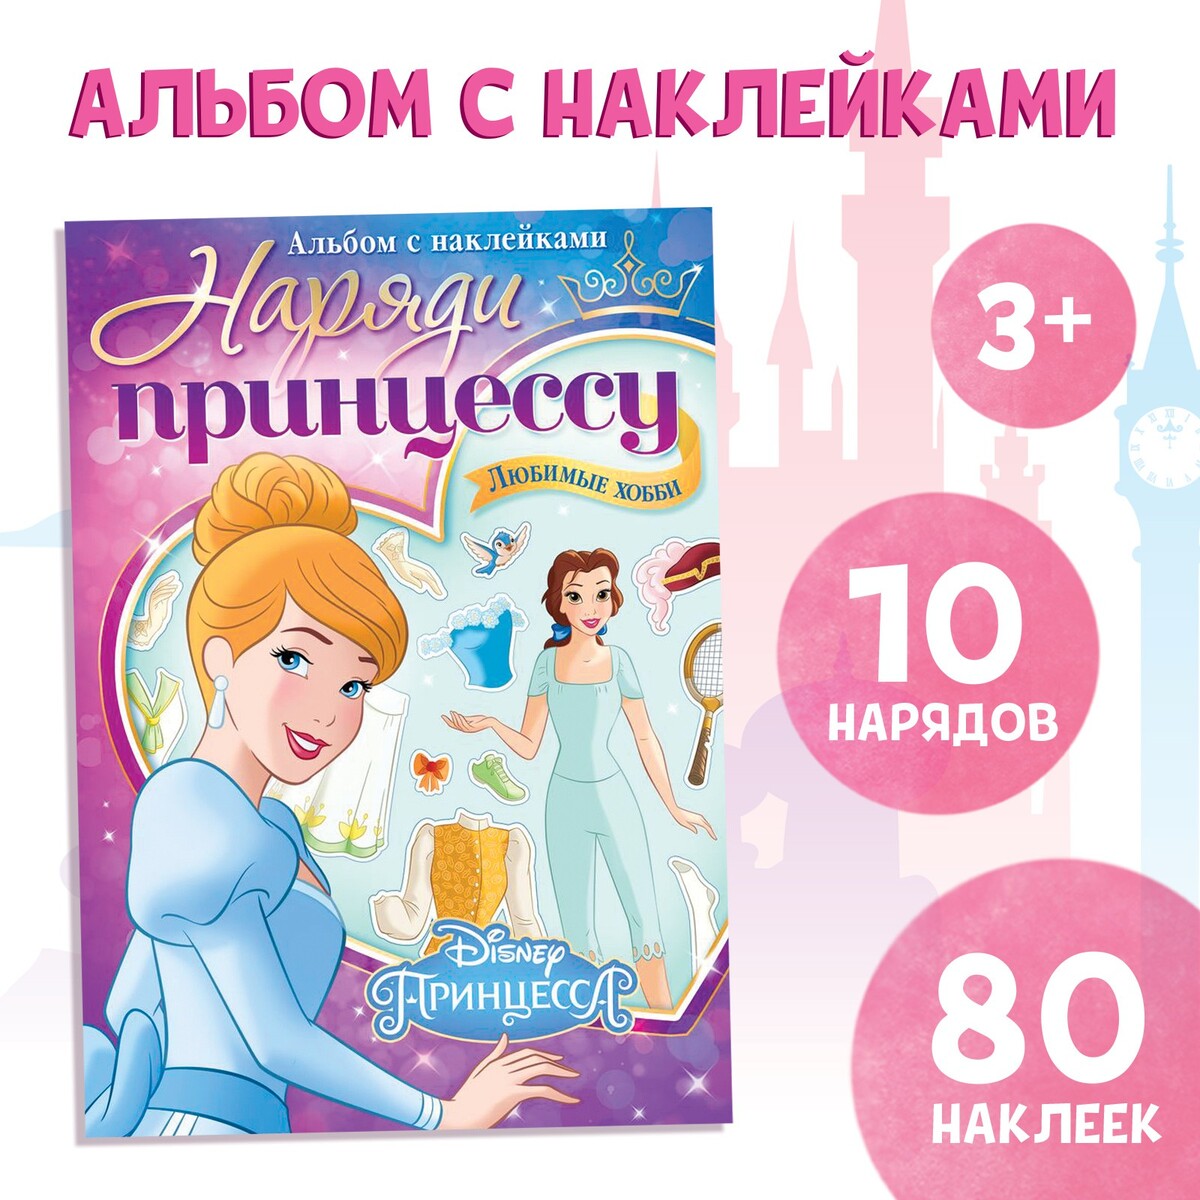 Альбом наклеек принцессы 40 объемных наклеек 300 наклеек